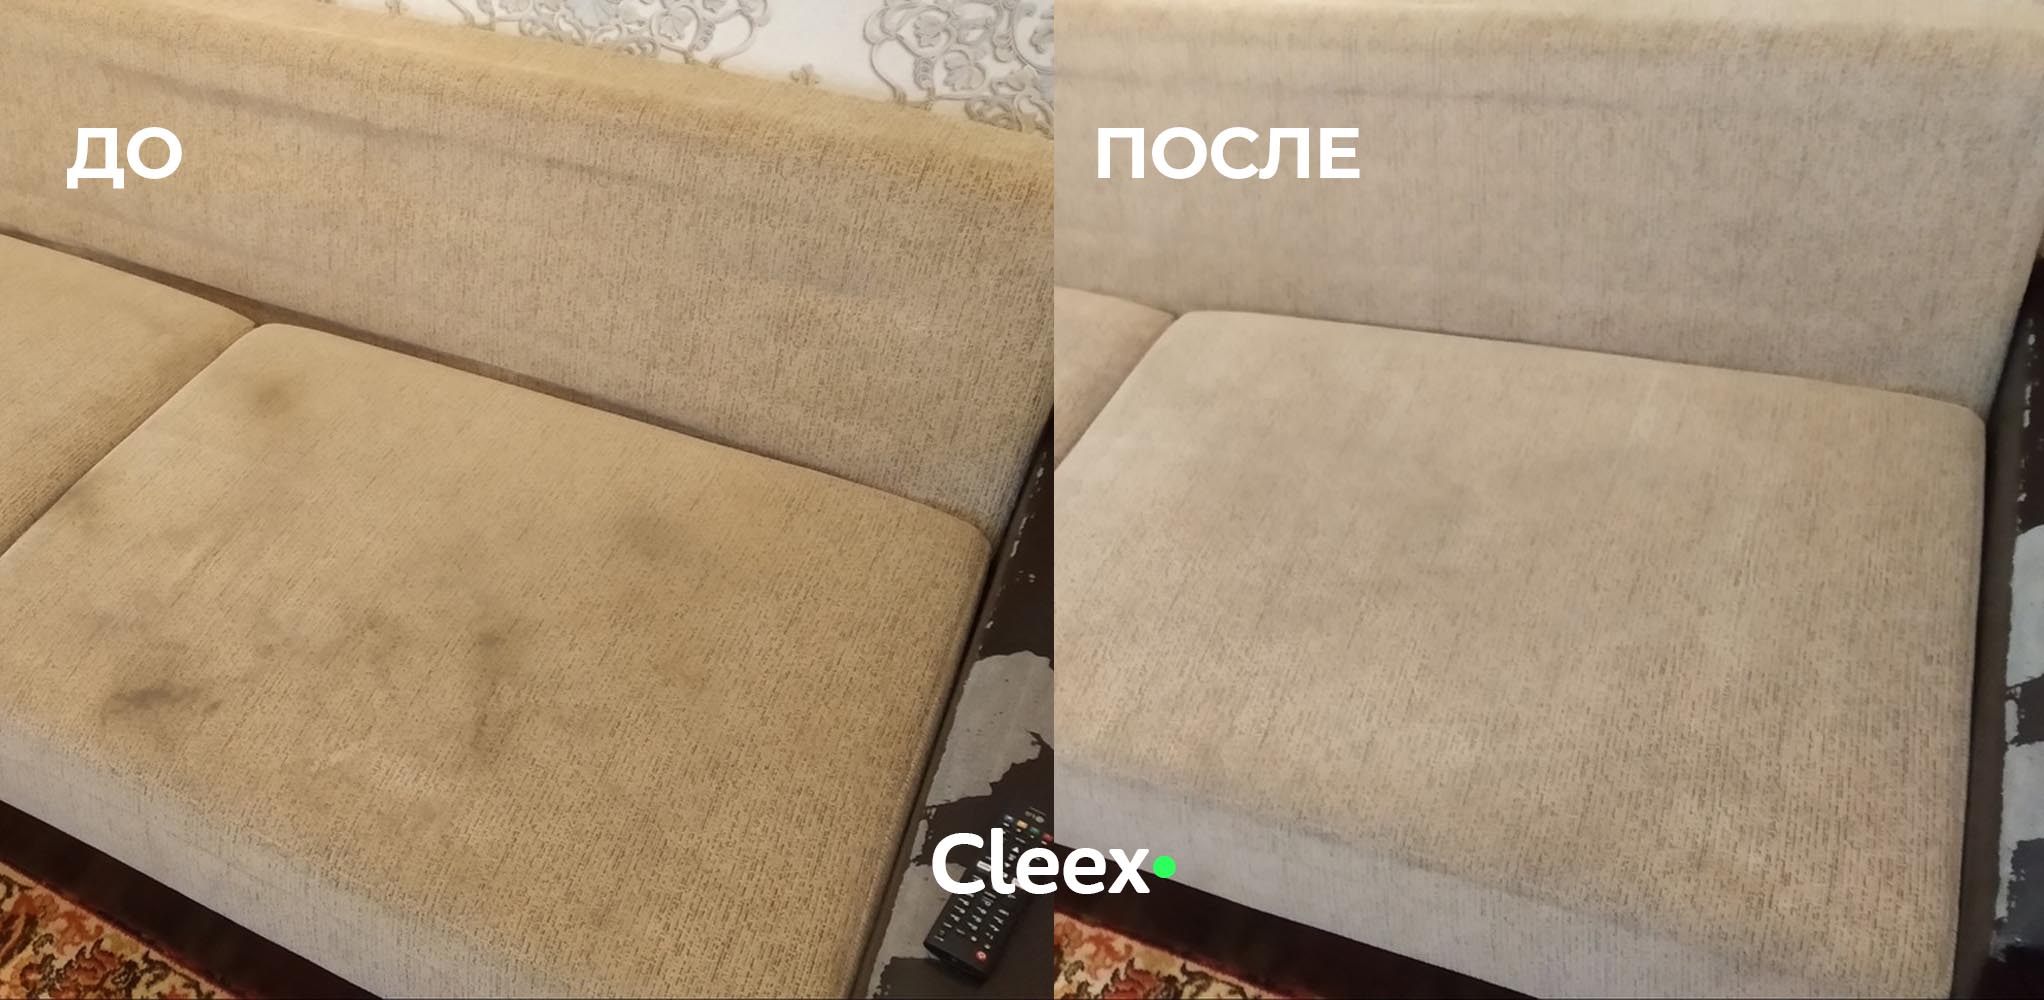 Выездная химчистка мебели на дому в Гродно. Приемлемые цены. Cleex